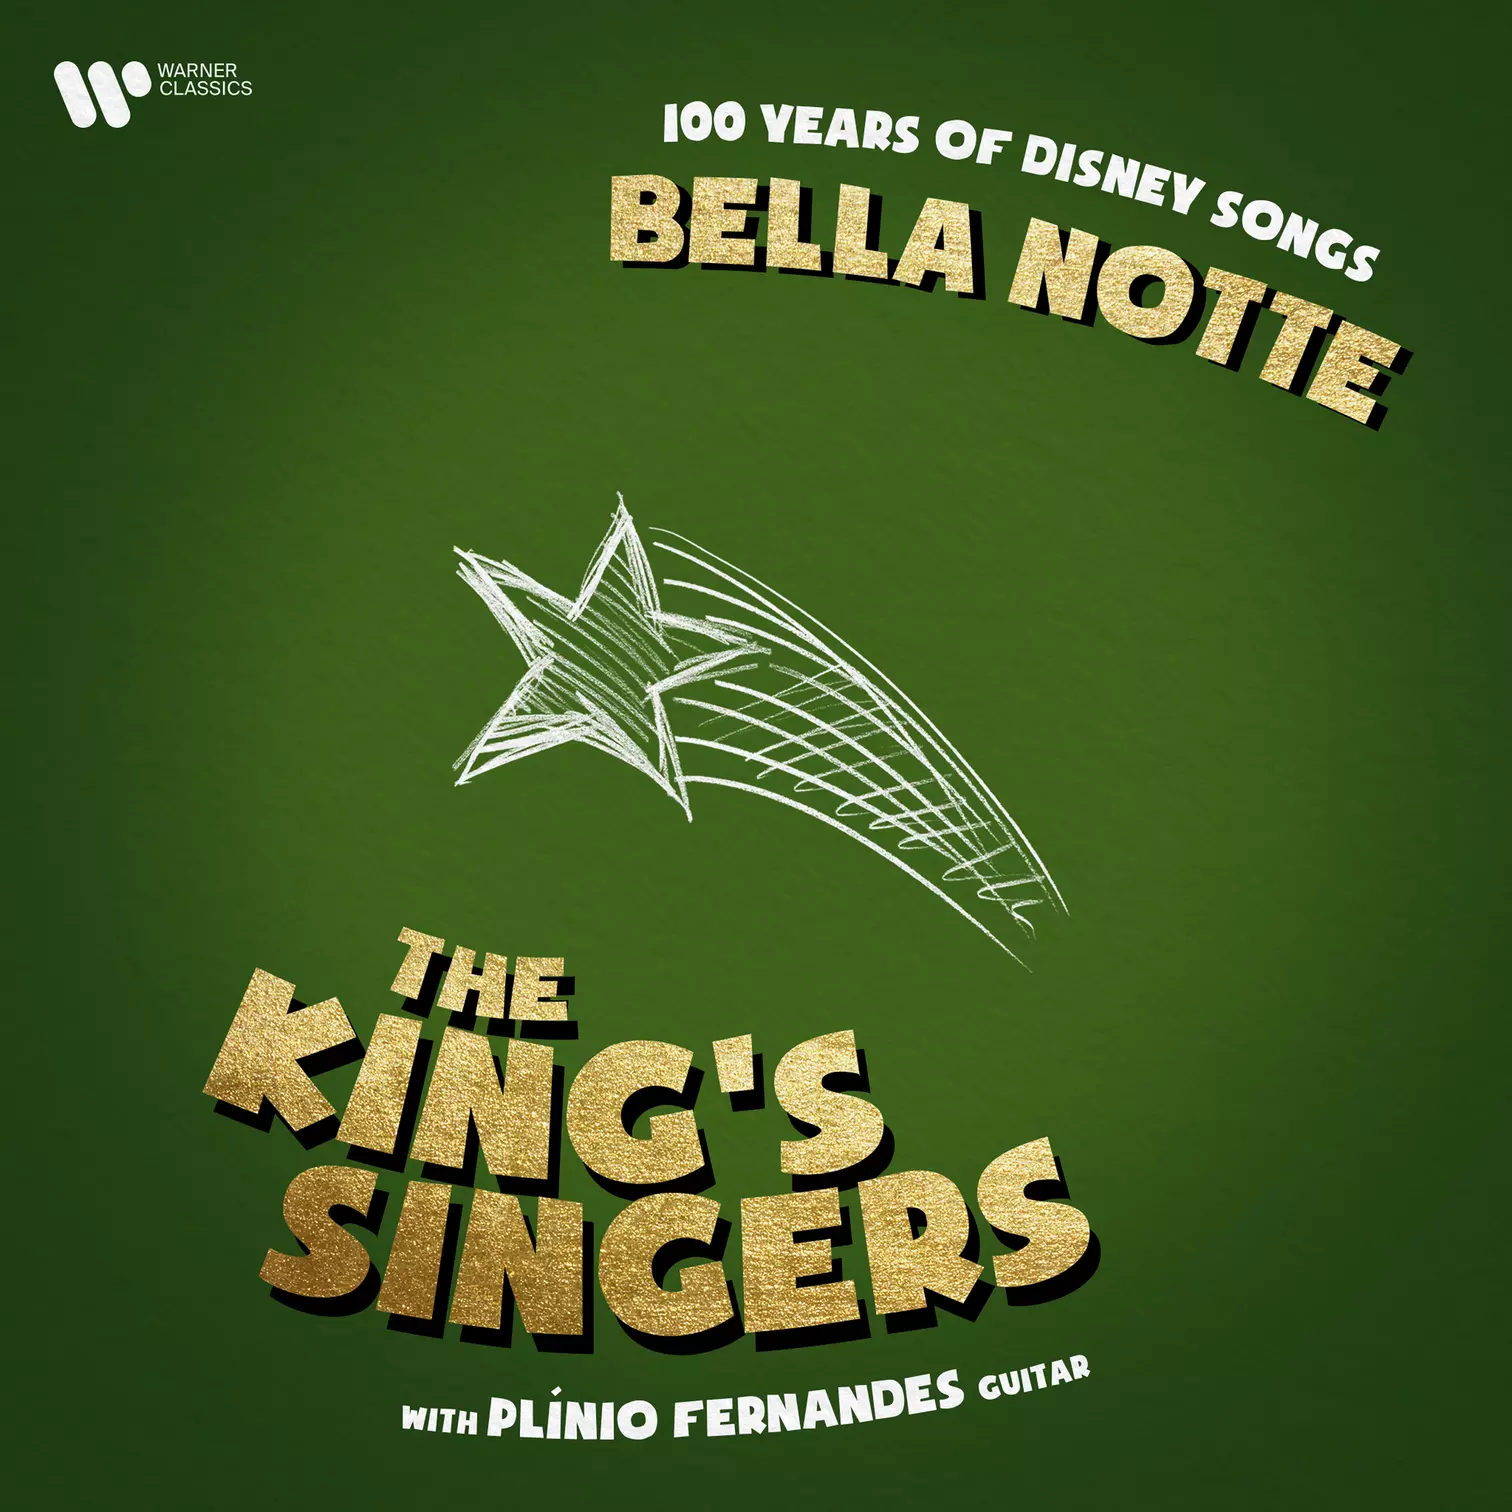 100 Years of Disney Songs: Bella notte